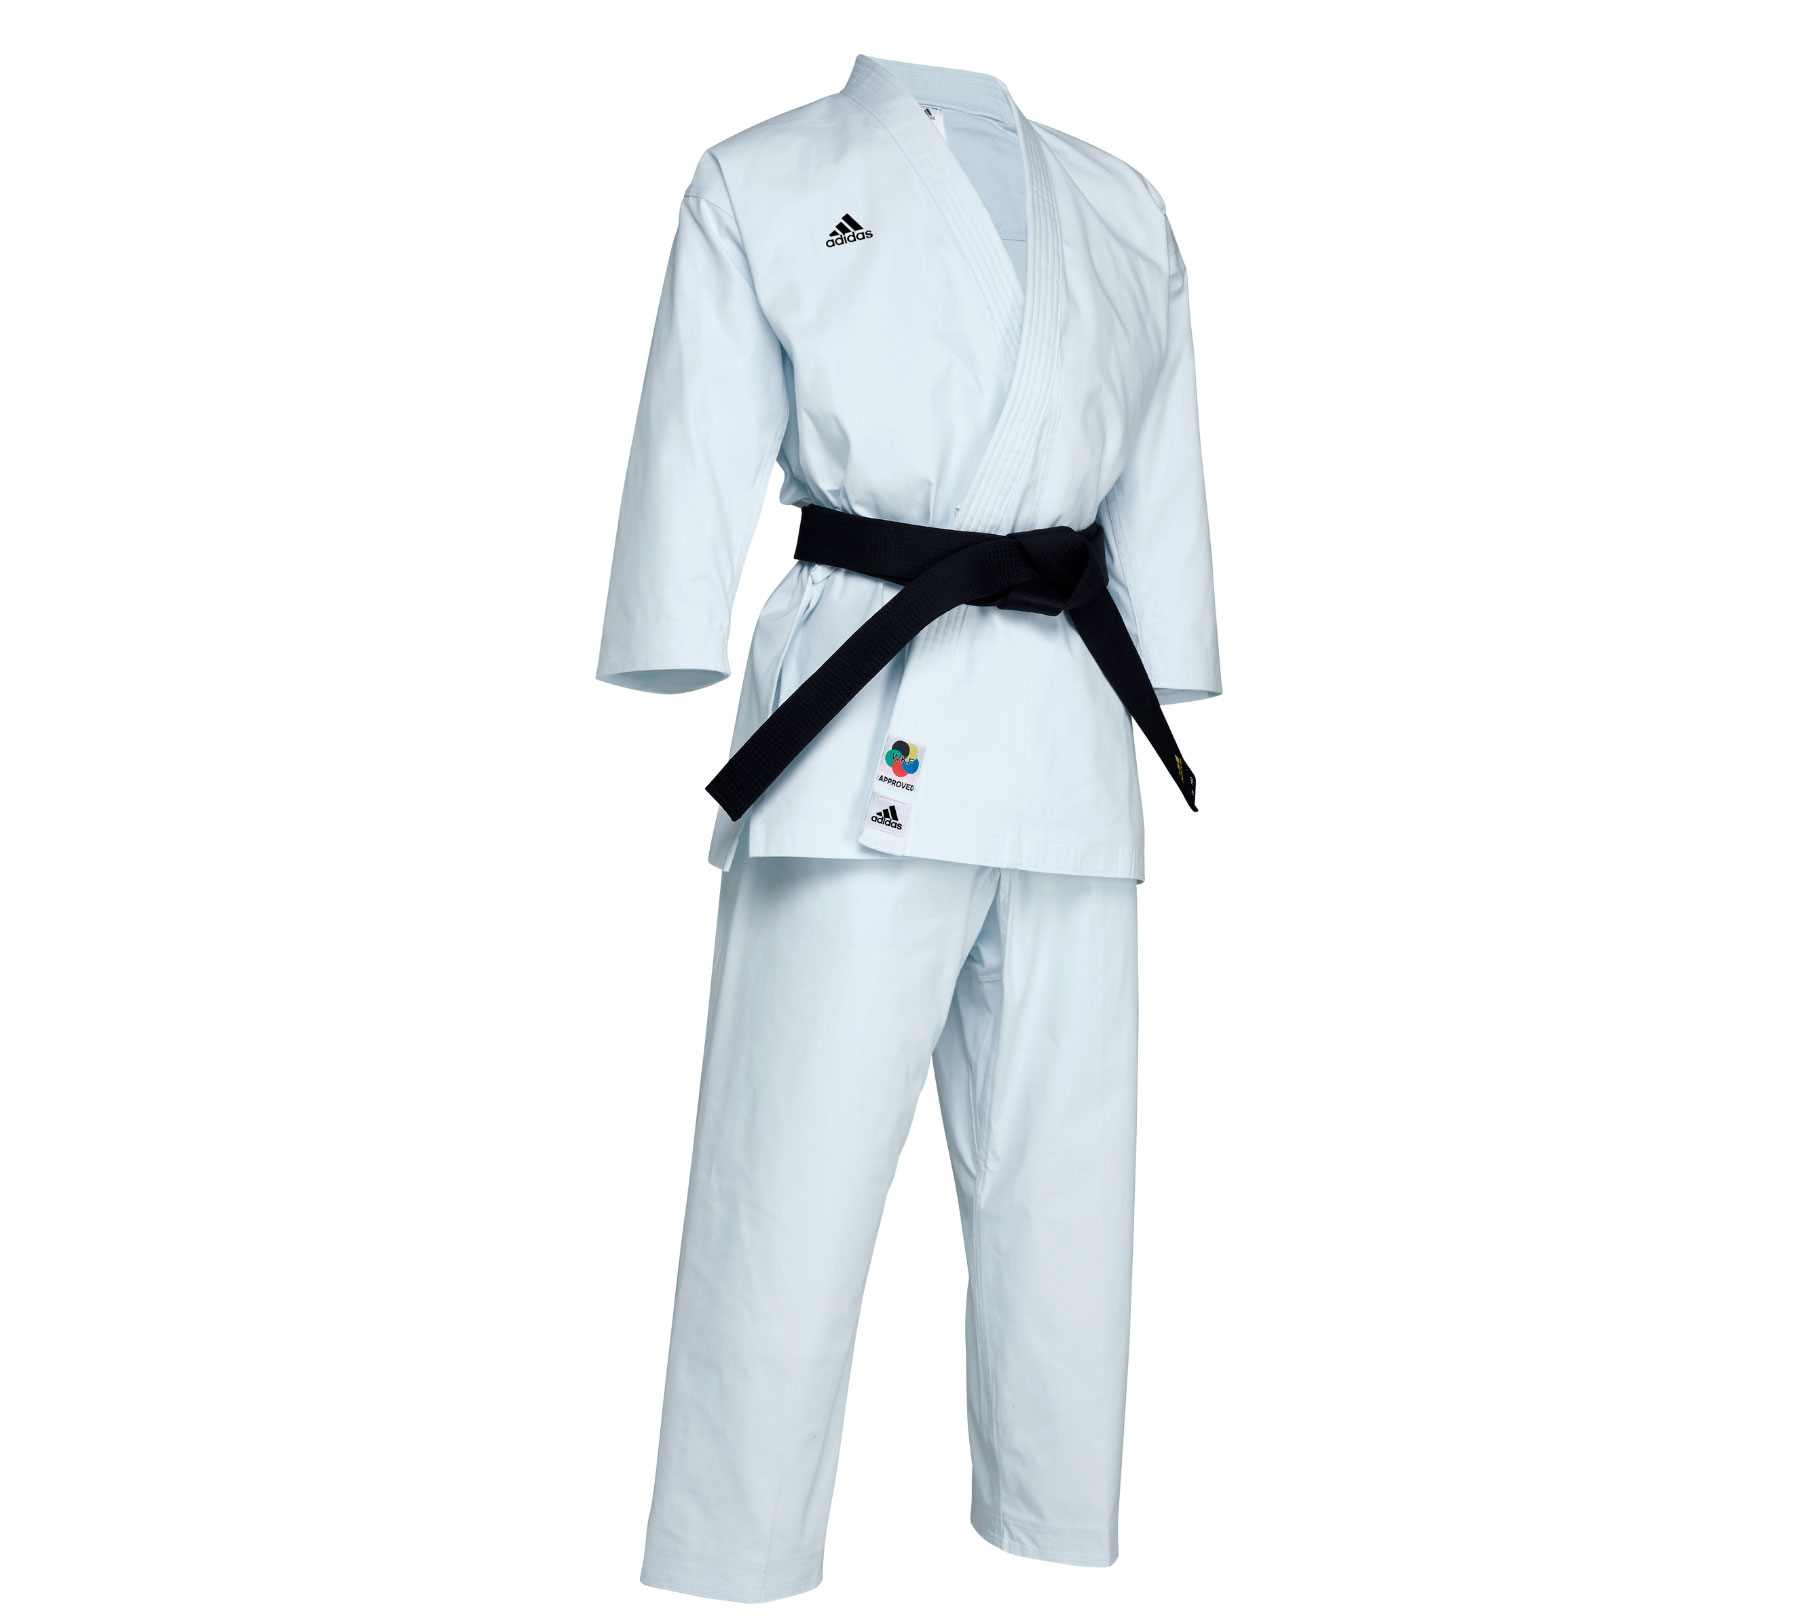 Кимоно для карате подростковое Adidas K999 Shori Karate Uniform Kata WKF белое с черным логотипом 1820_1620